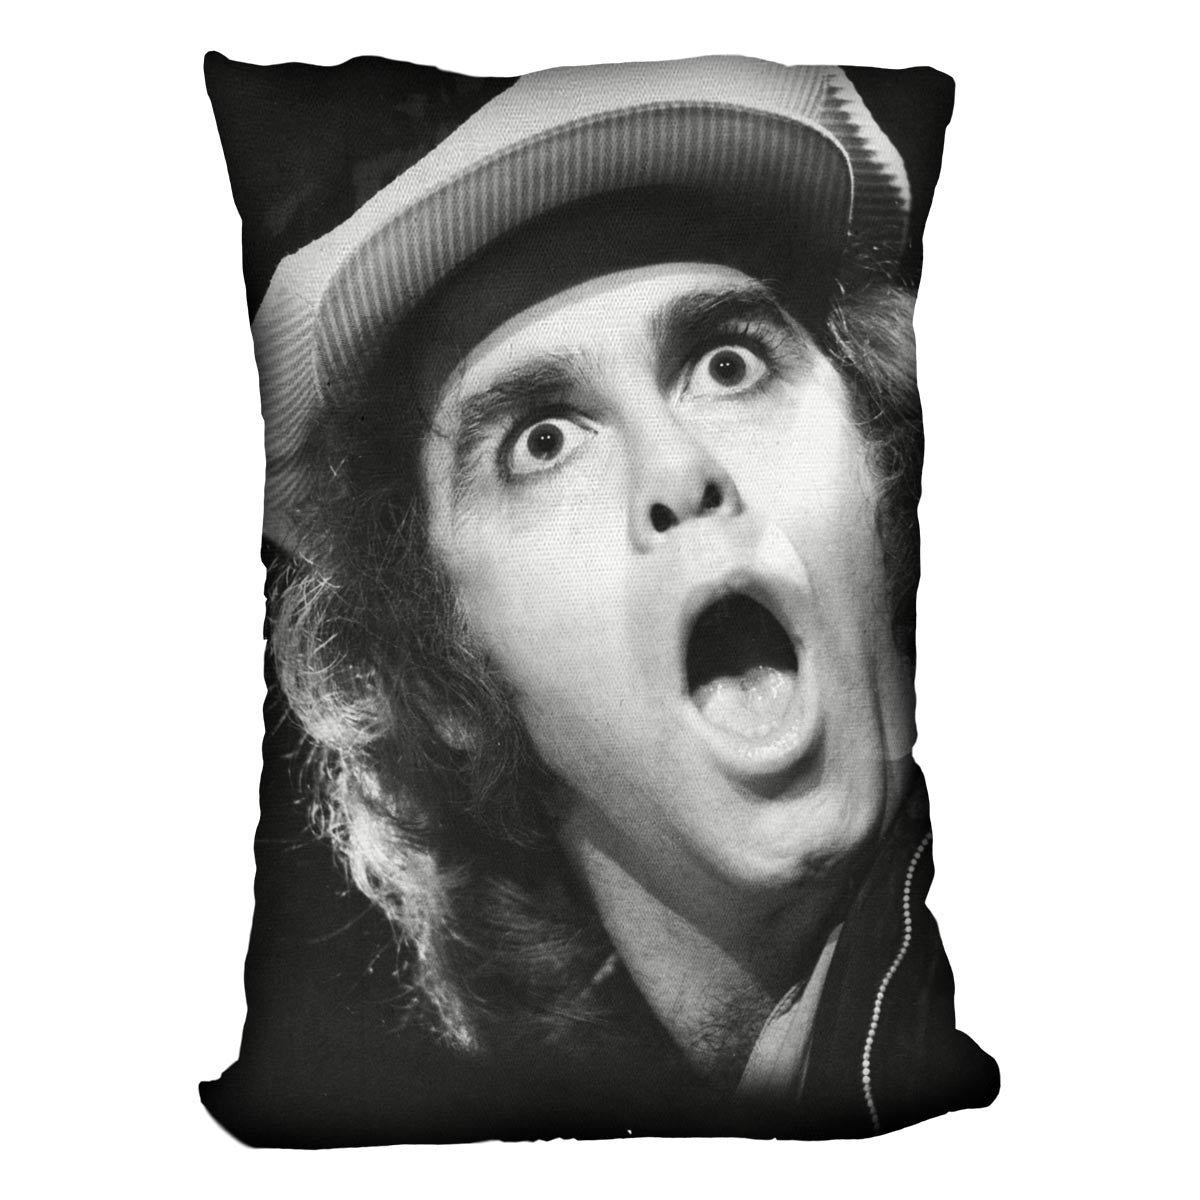 Elton John shocked Cushion